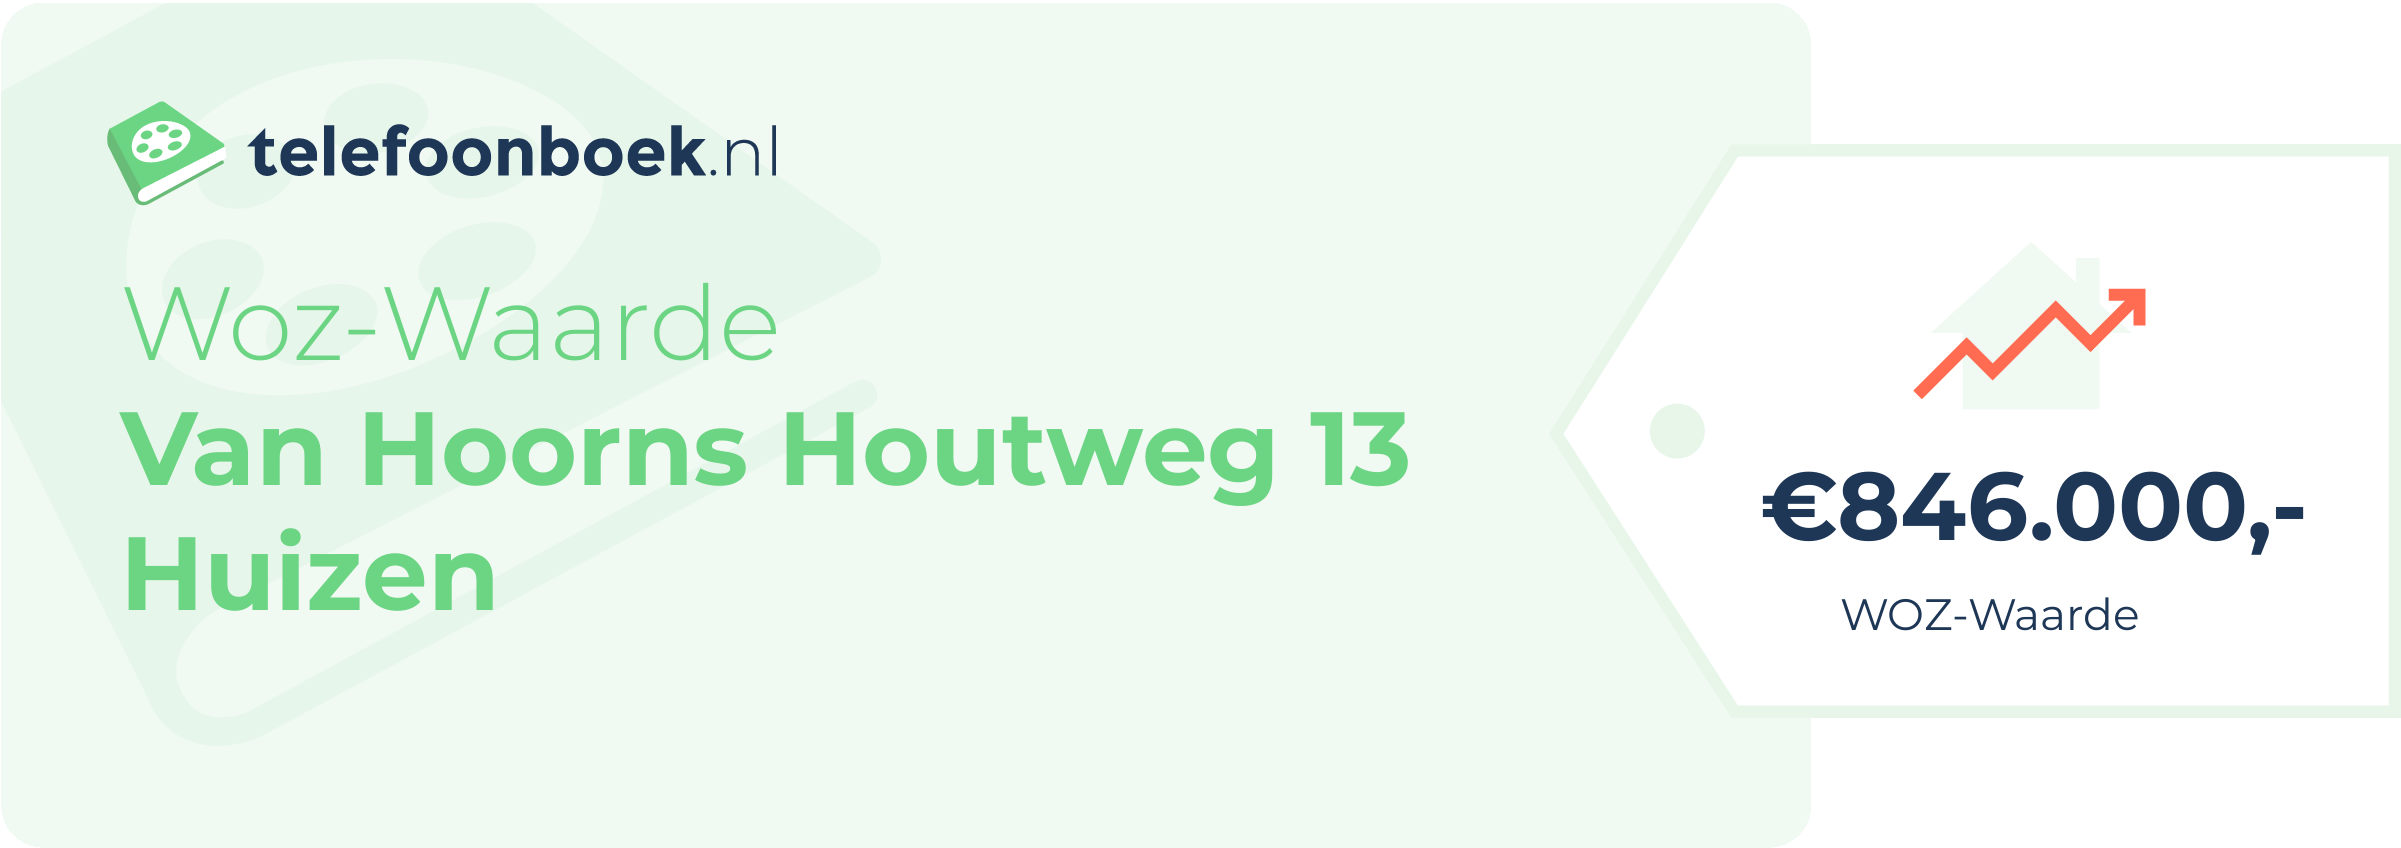 WOZ-waarde Van Hoorns Houtweg 13 Huizen